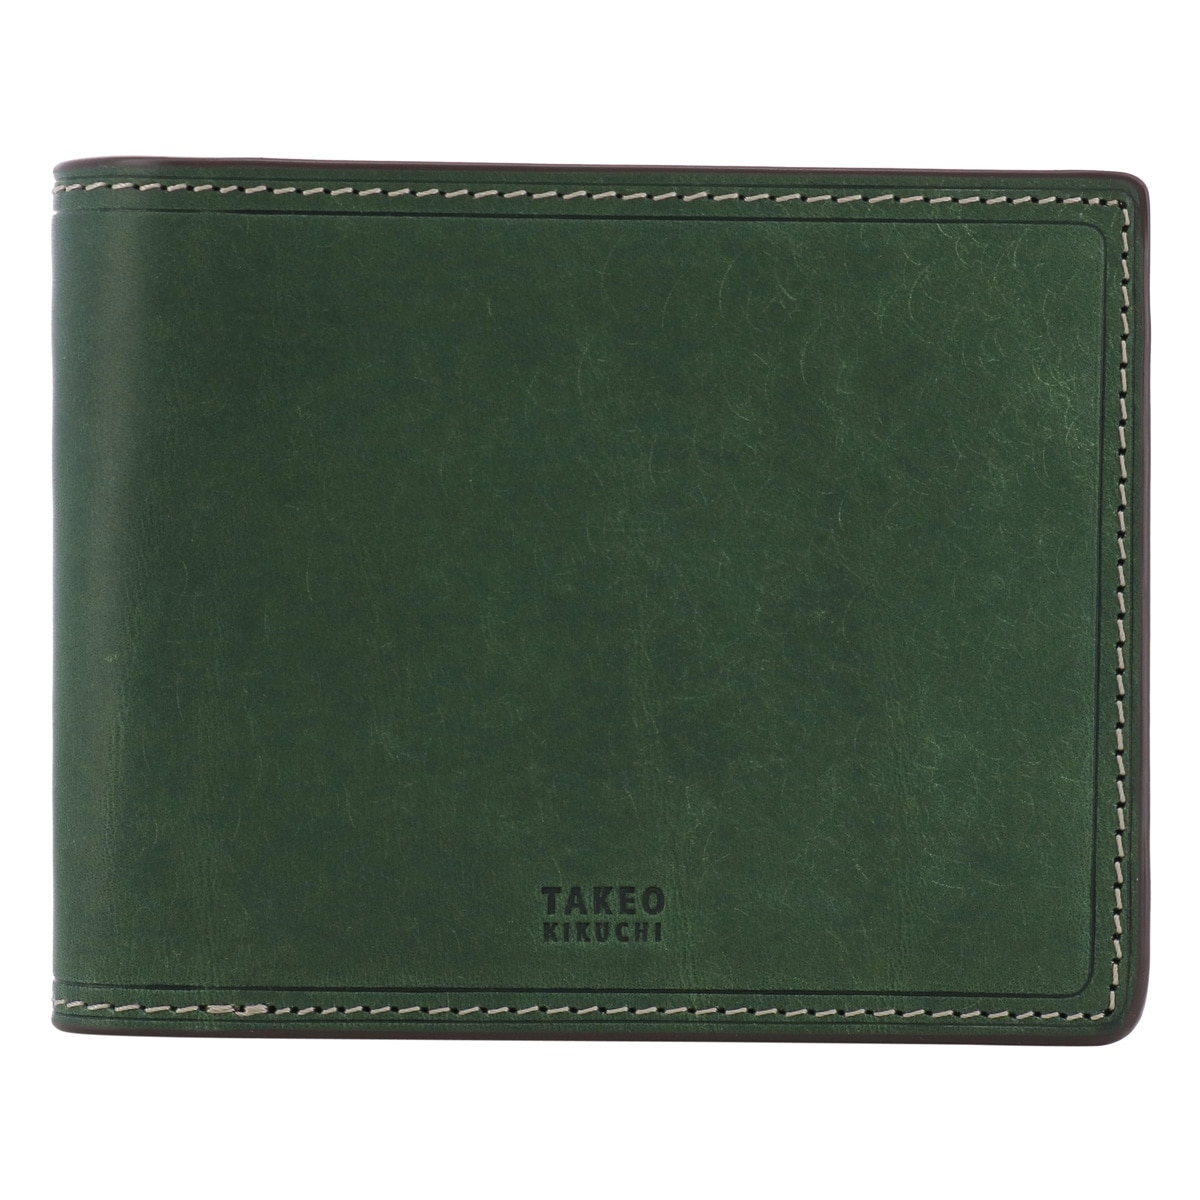 タケオキクチ 財布 二つ折り 本革 メンズ 780613 マルゴII TAKEO KIKUCHI レザー 牛革